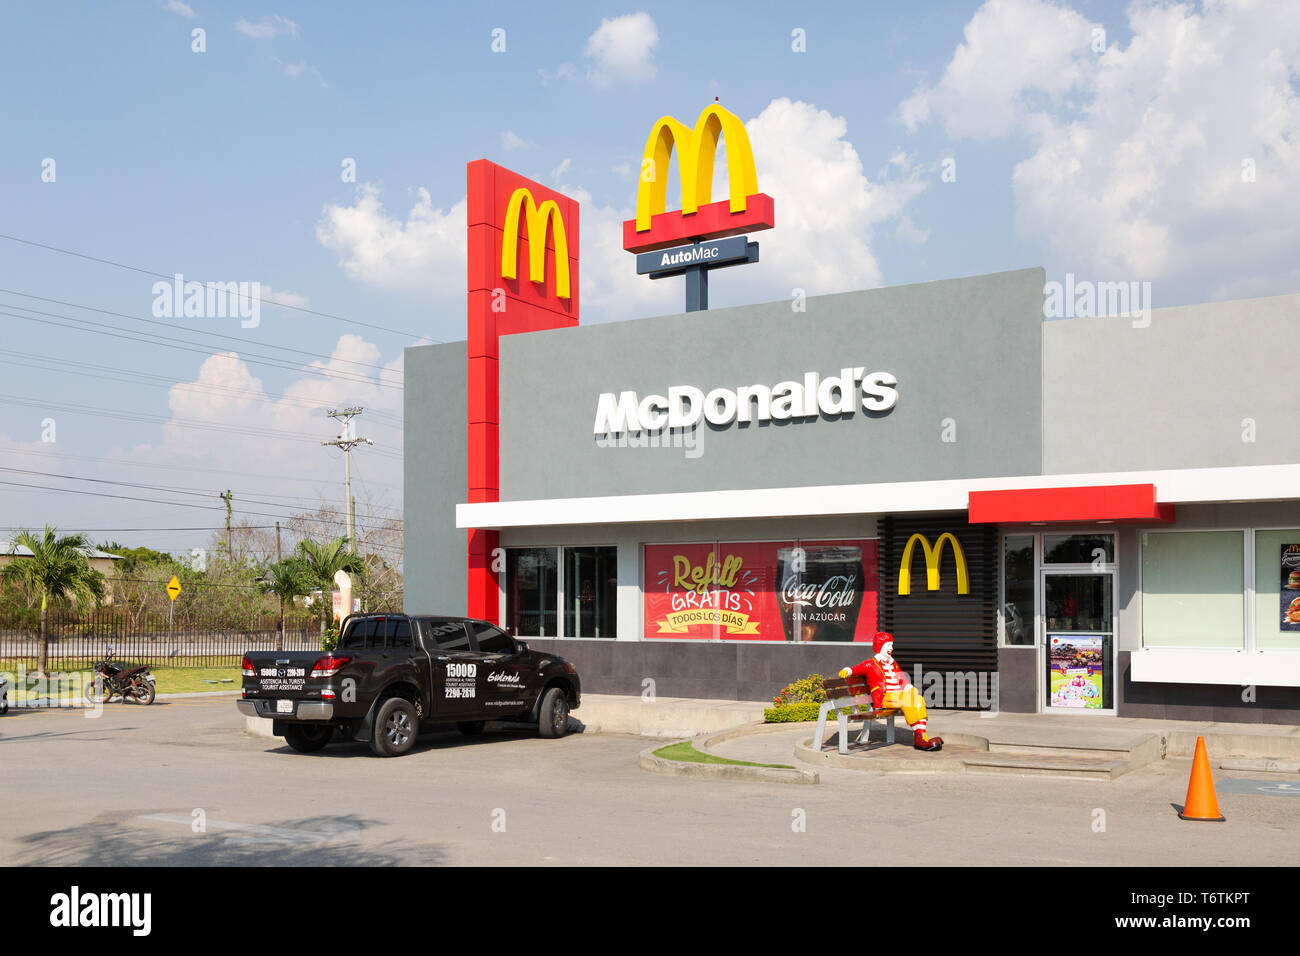 McDonalds Amérique centrale: McDonalds restauration rapide extérieur, Flores ville, Guatemala Amérique centrale Banque D'Images